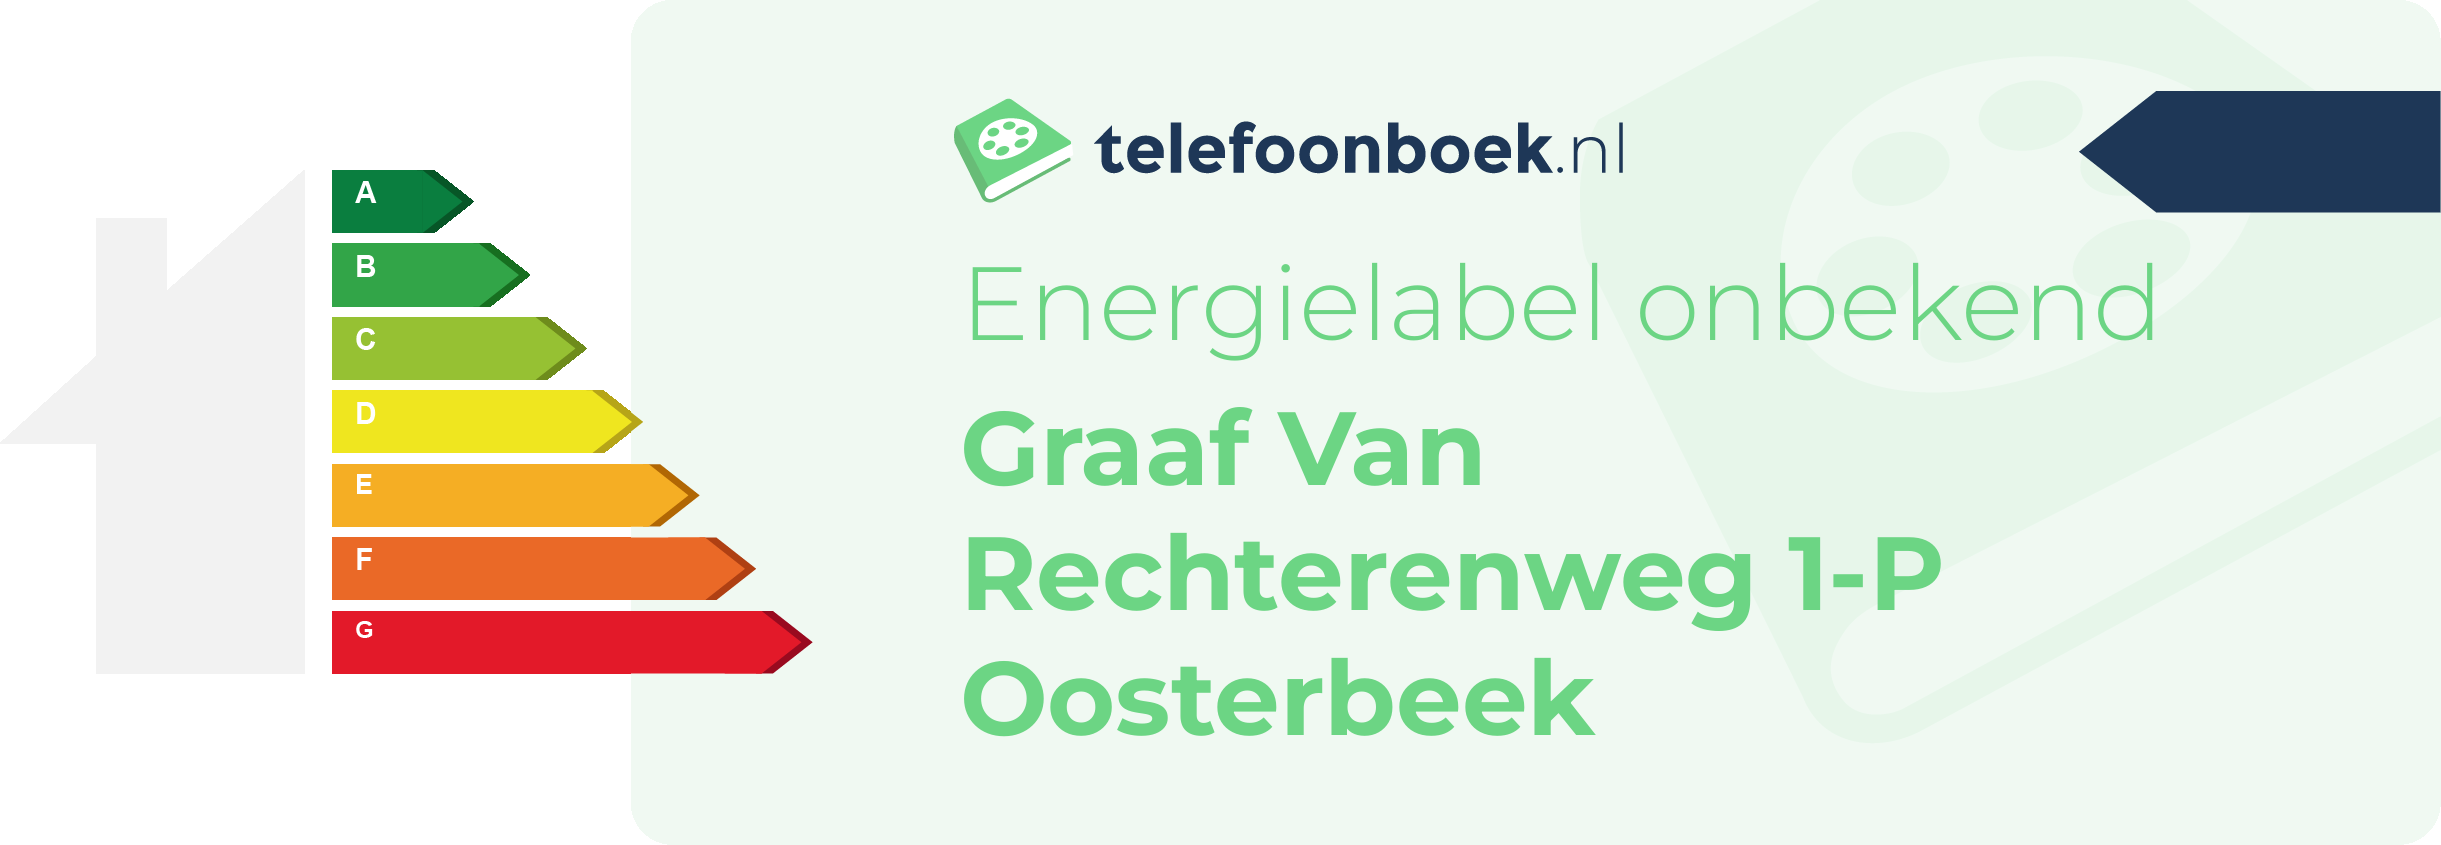 Energielabel Graaf Van Rechterenweg 1-P Oosterbeek